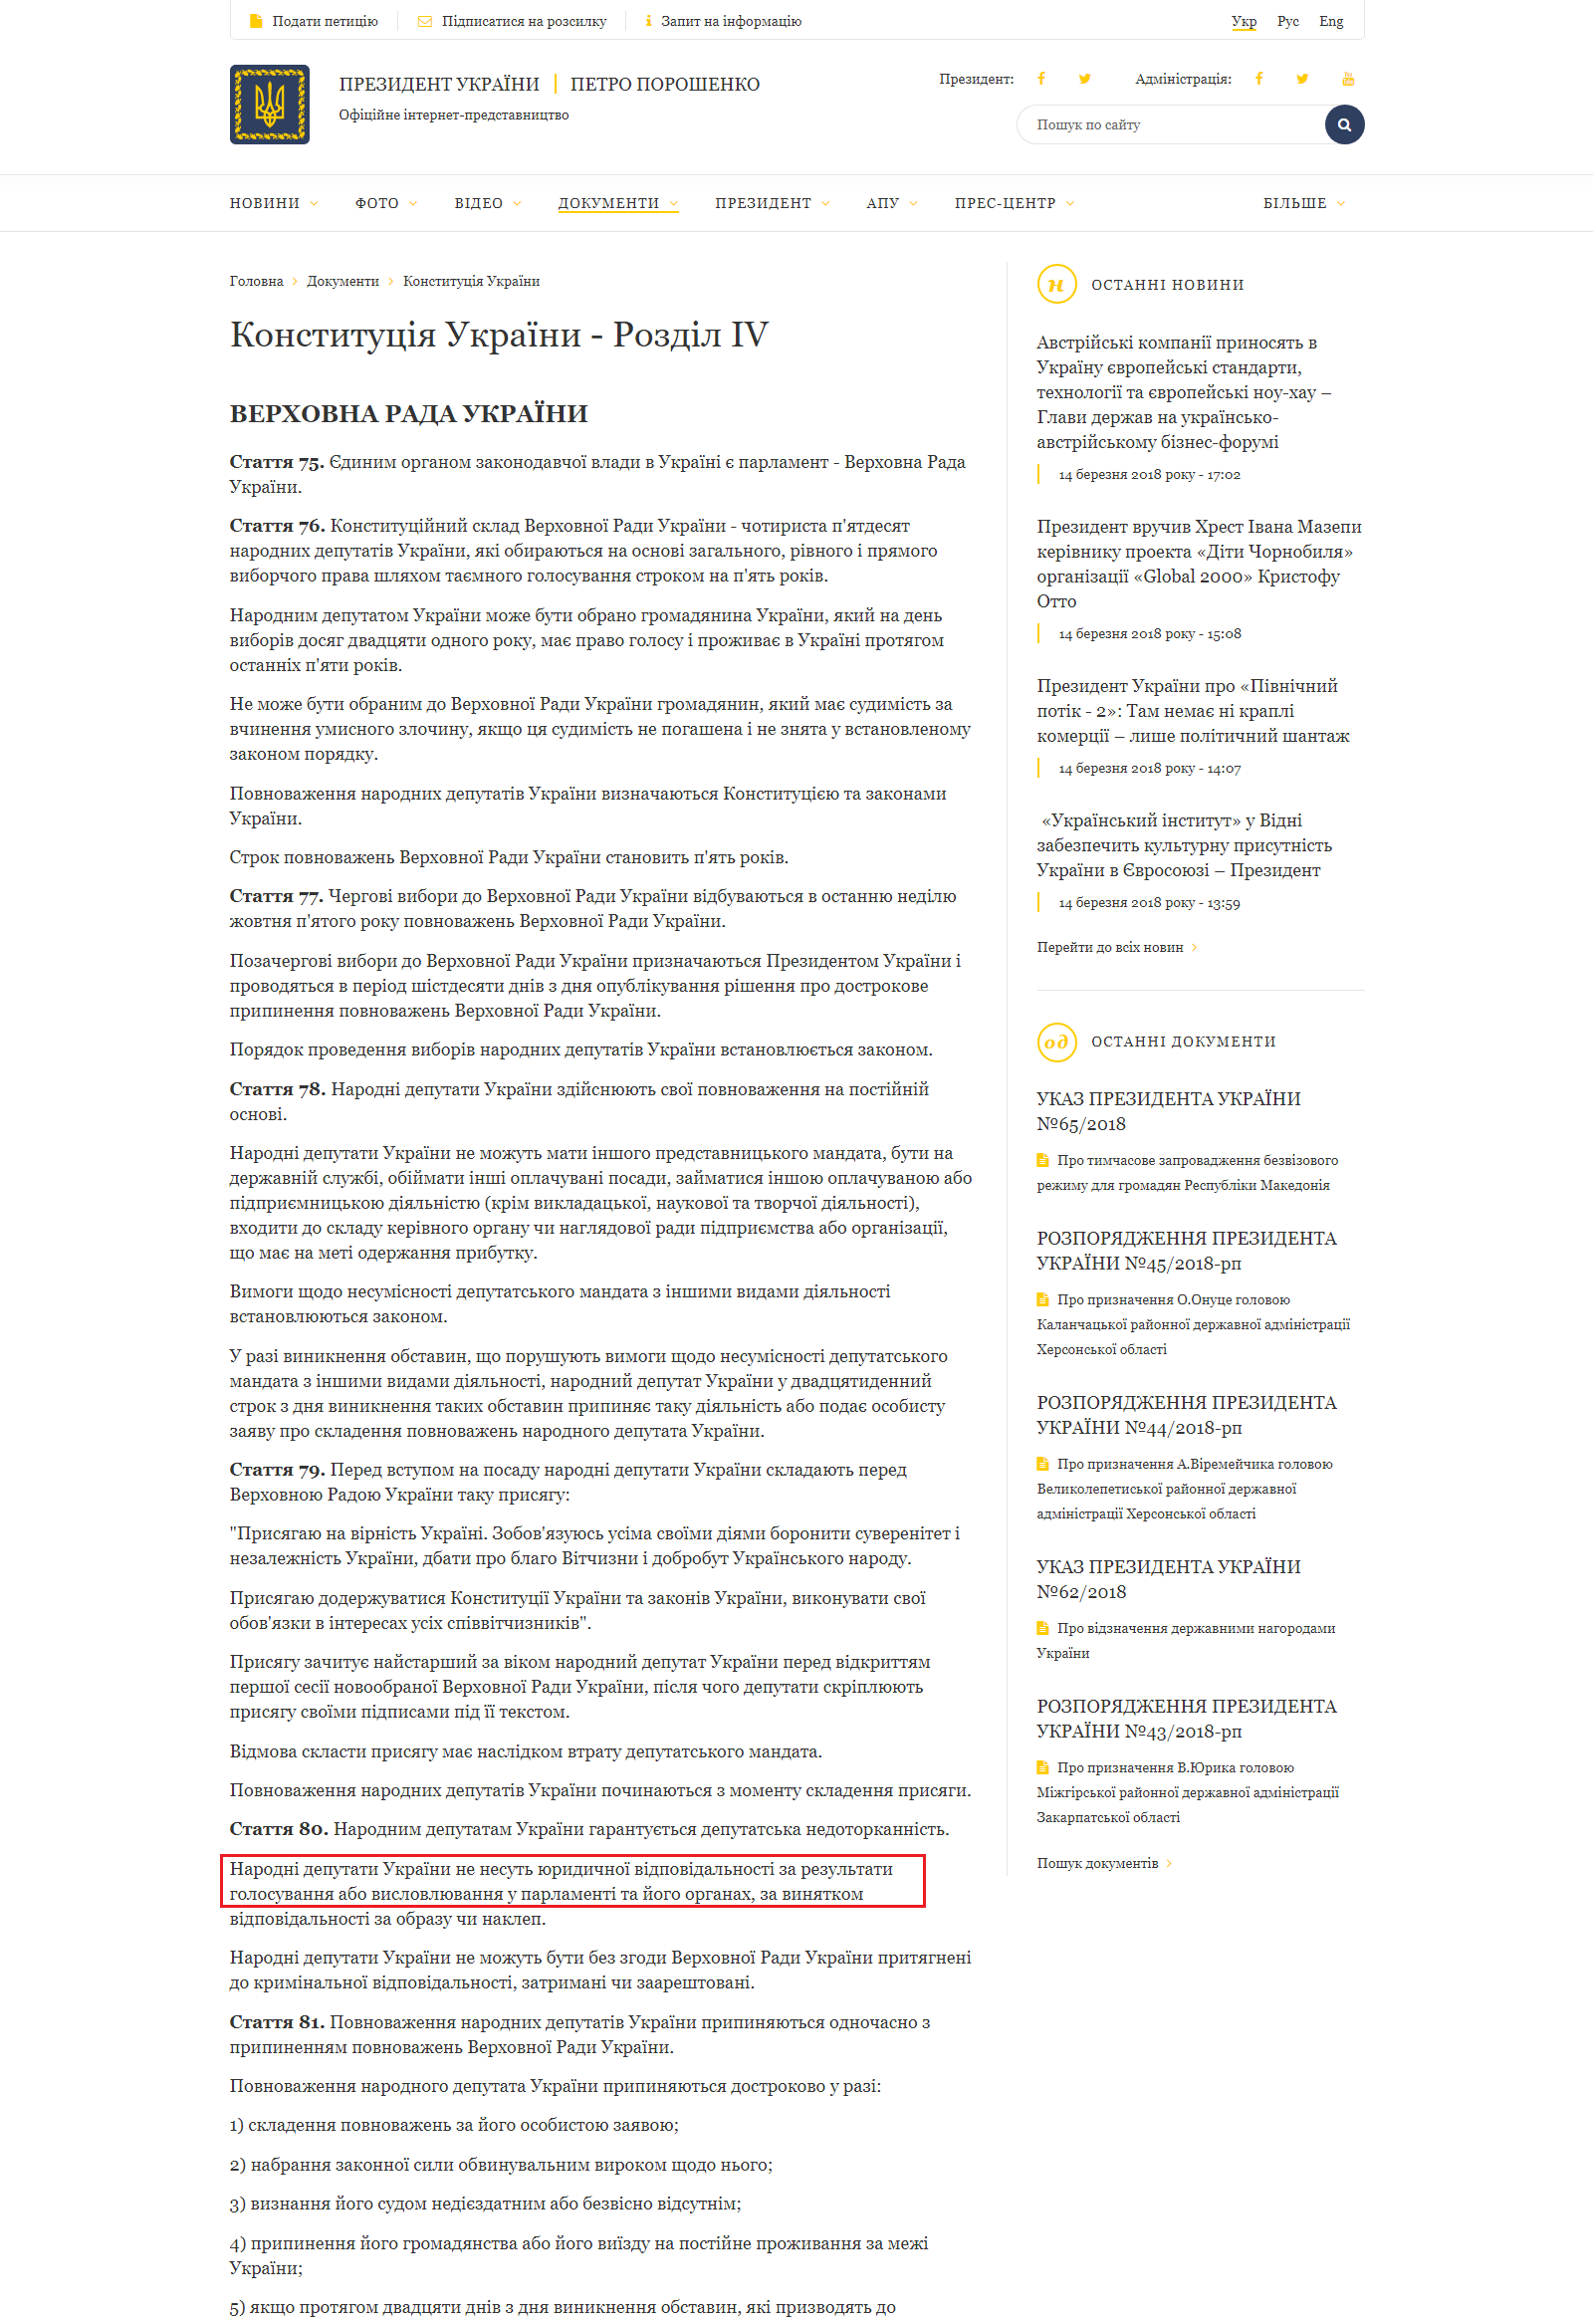 http://www.president.gov.ua/ua/documents/constitution/konstituciya-ukrayini-rozdil-iv